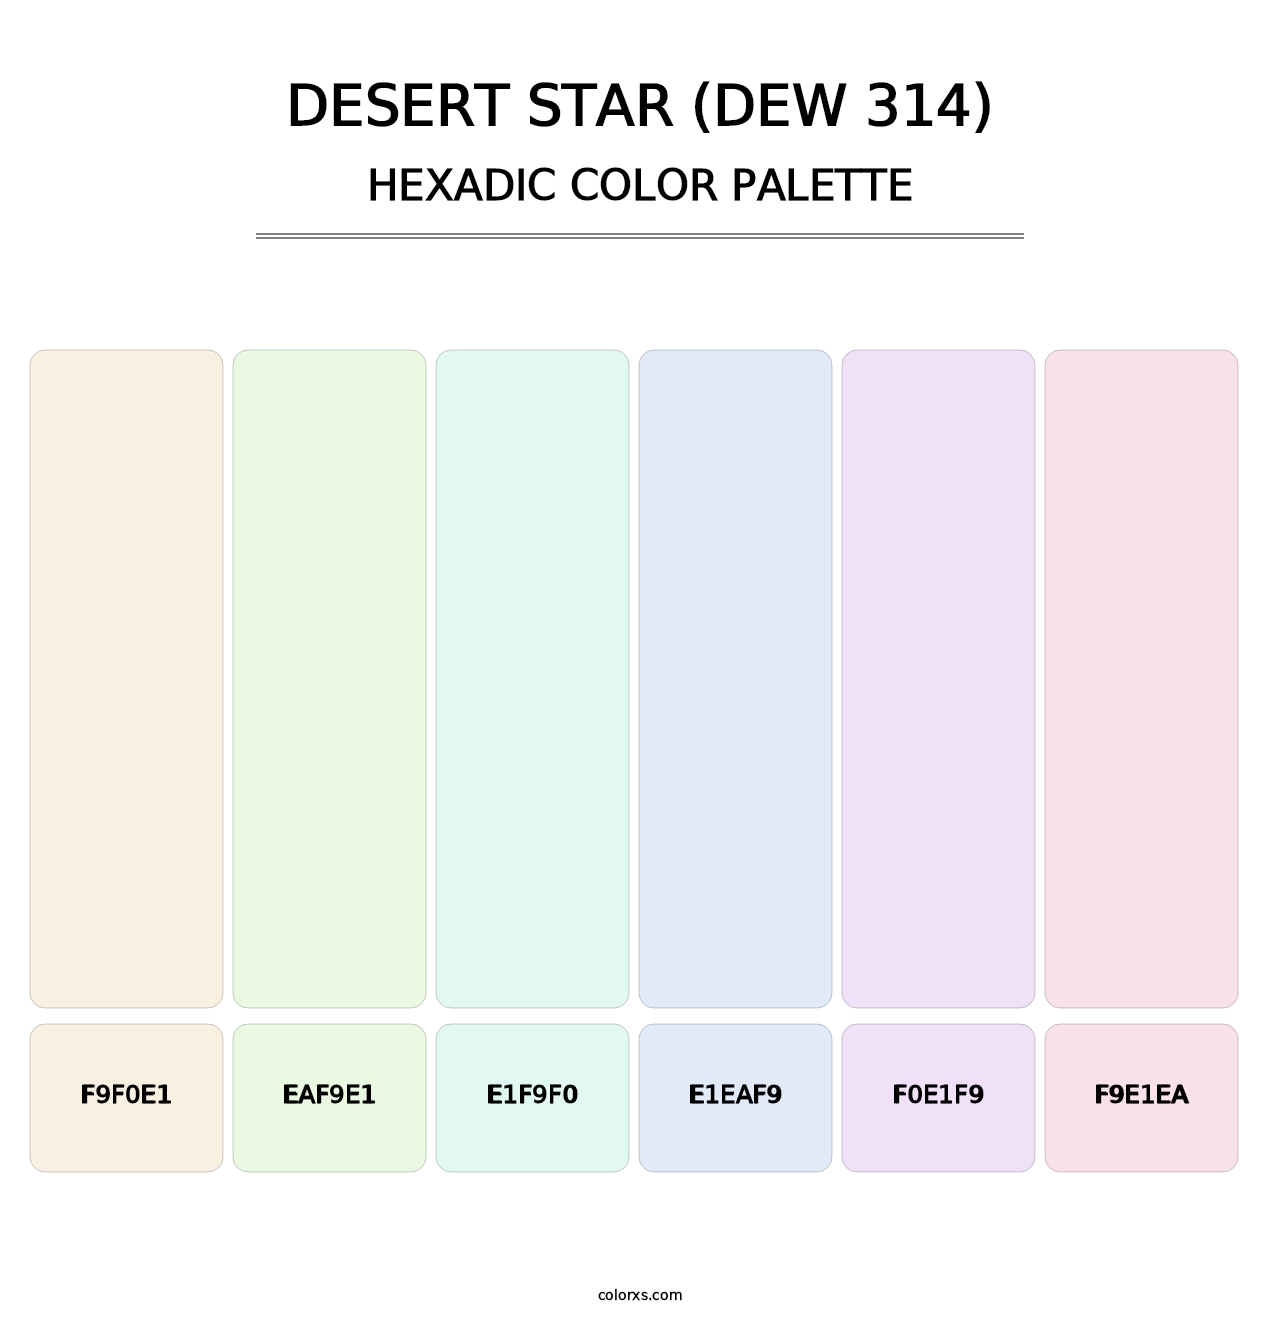 Desert Star (DEW 314) - Hexadic Color Palette